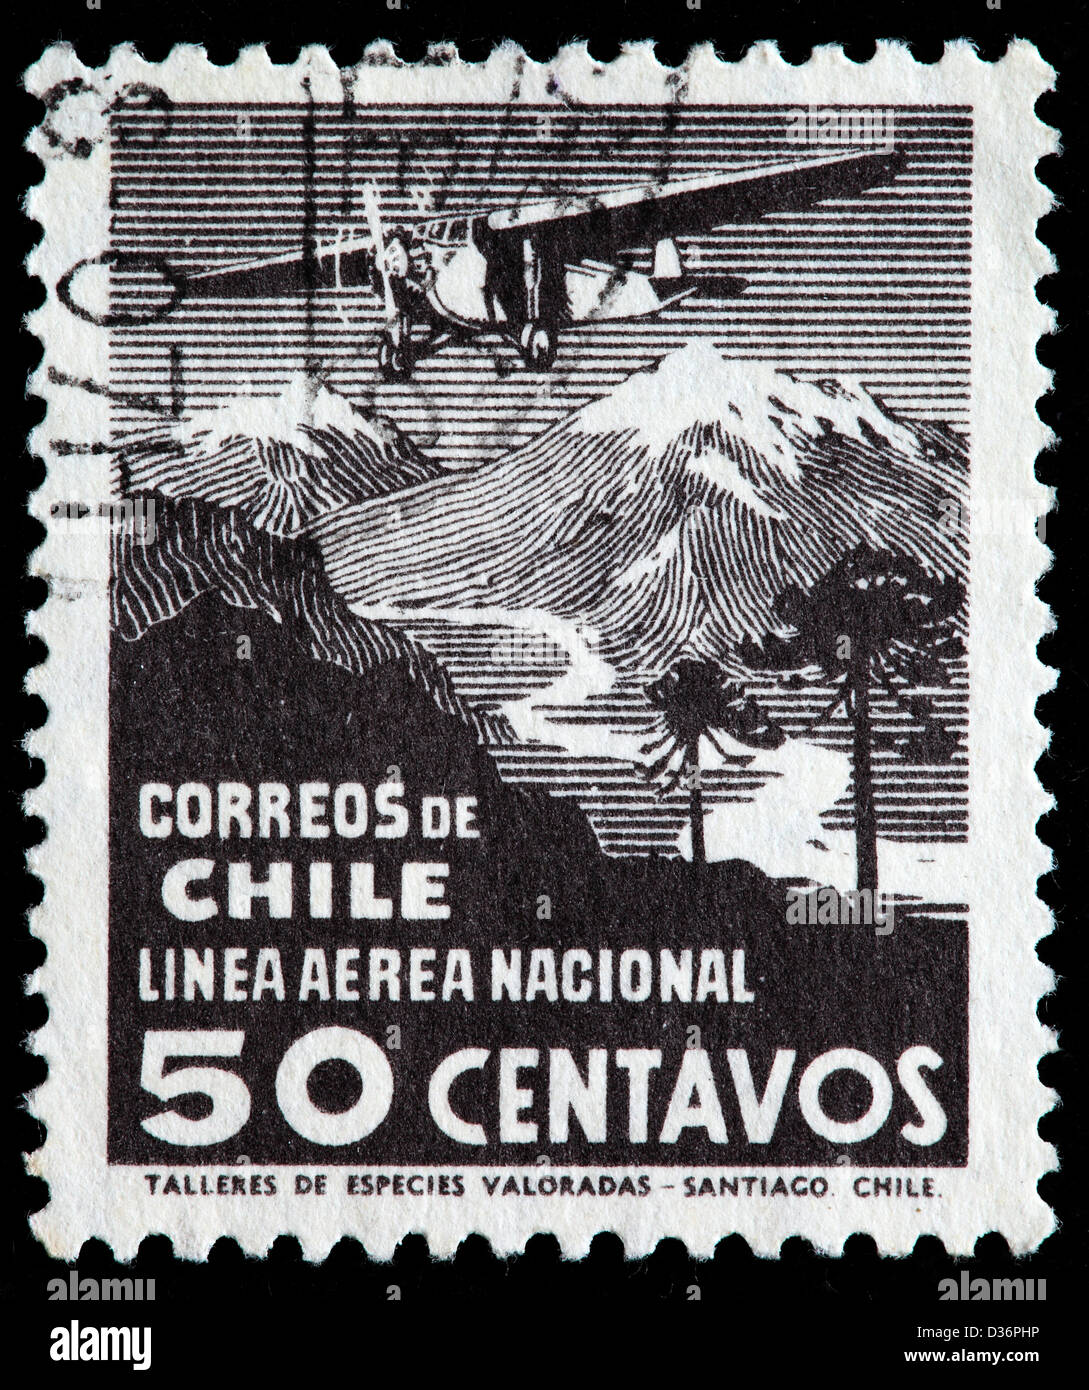 Las líneas aéreas nacionales, sello, Chile Foto de stock